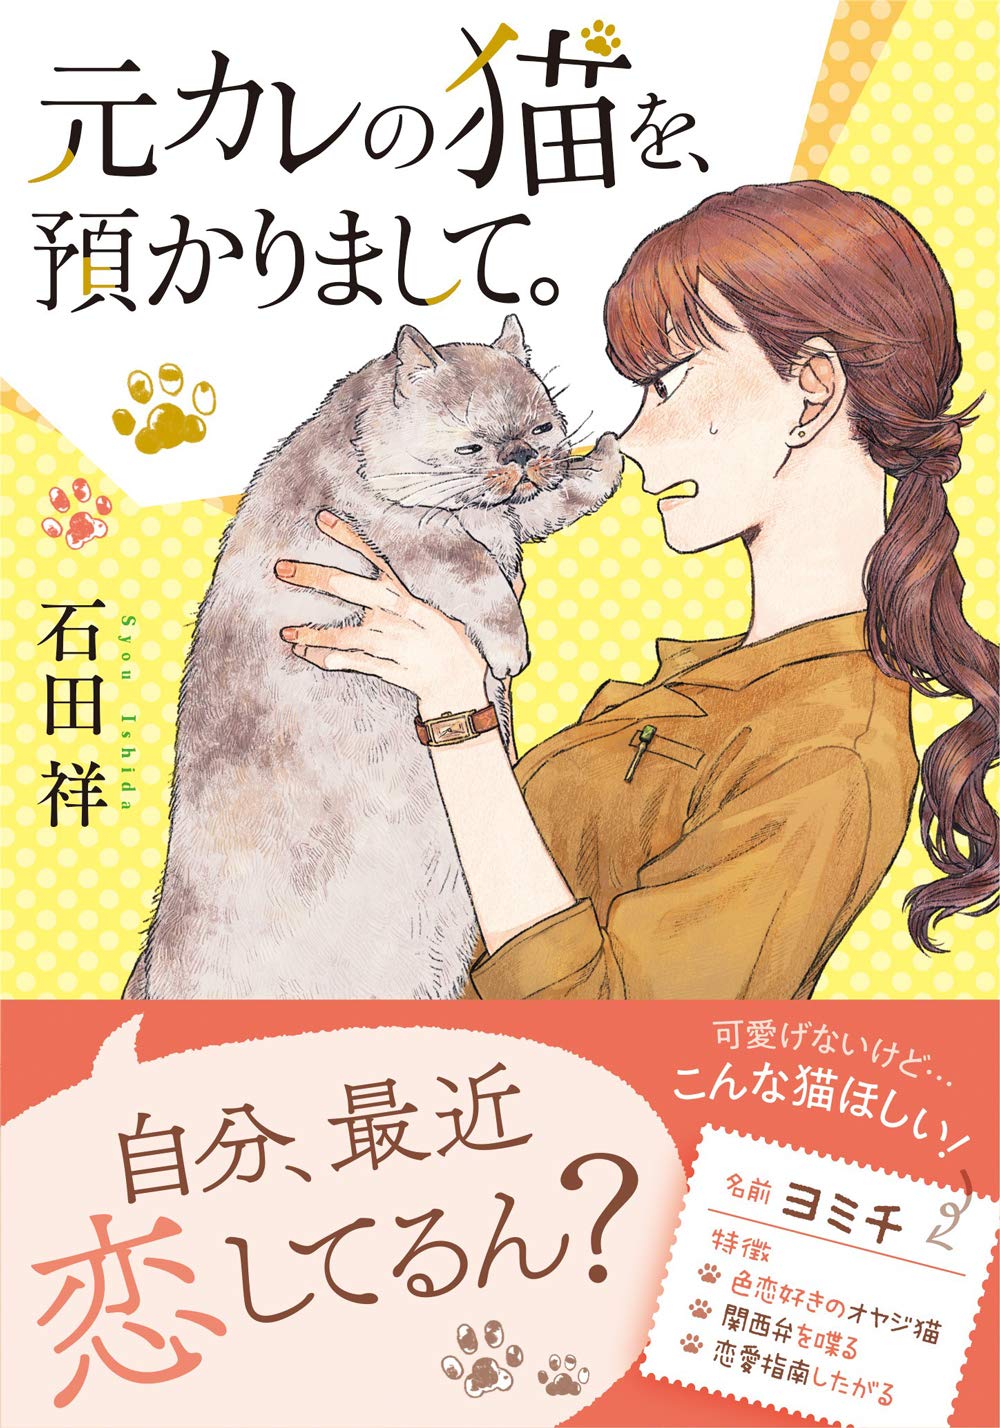 恋に不器用な女性とわがまま猫の もふもふ ラブコメディ 元カレの猫を 預かりまして 発売 Sankeibiz サンケイビズ 自分を磨く経済情報サイト